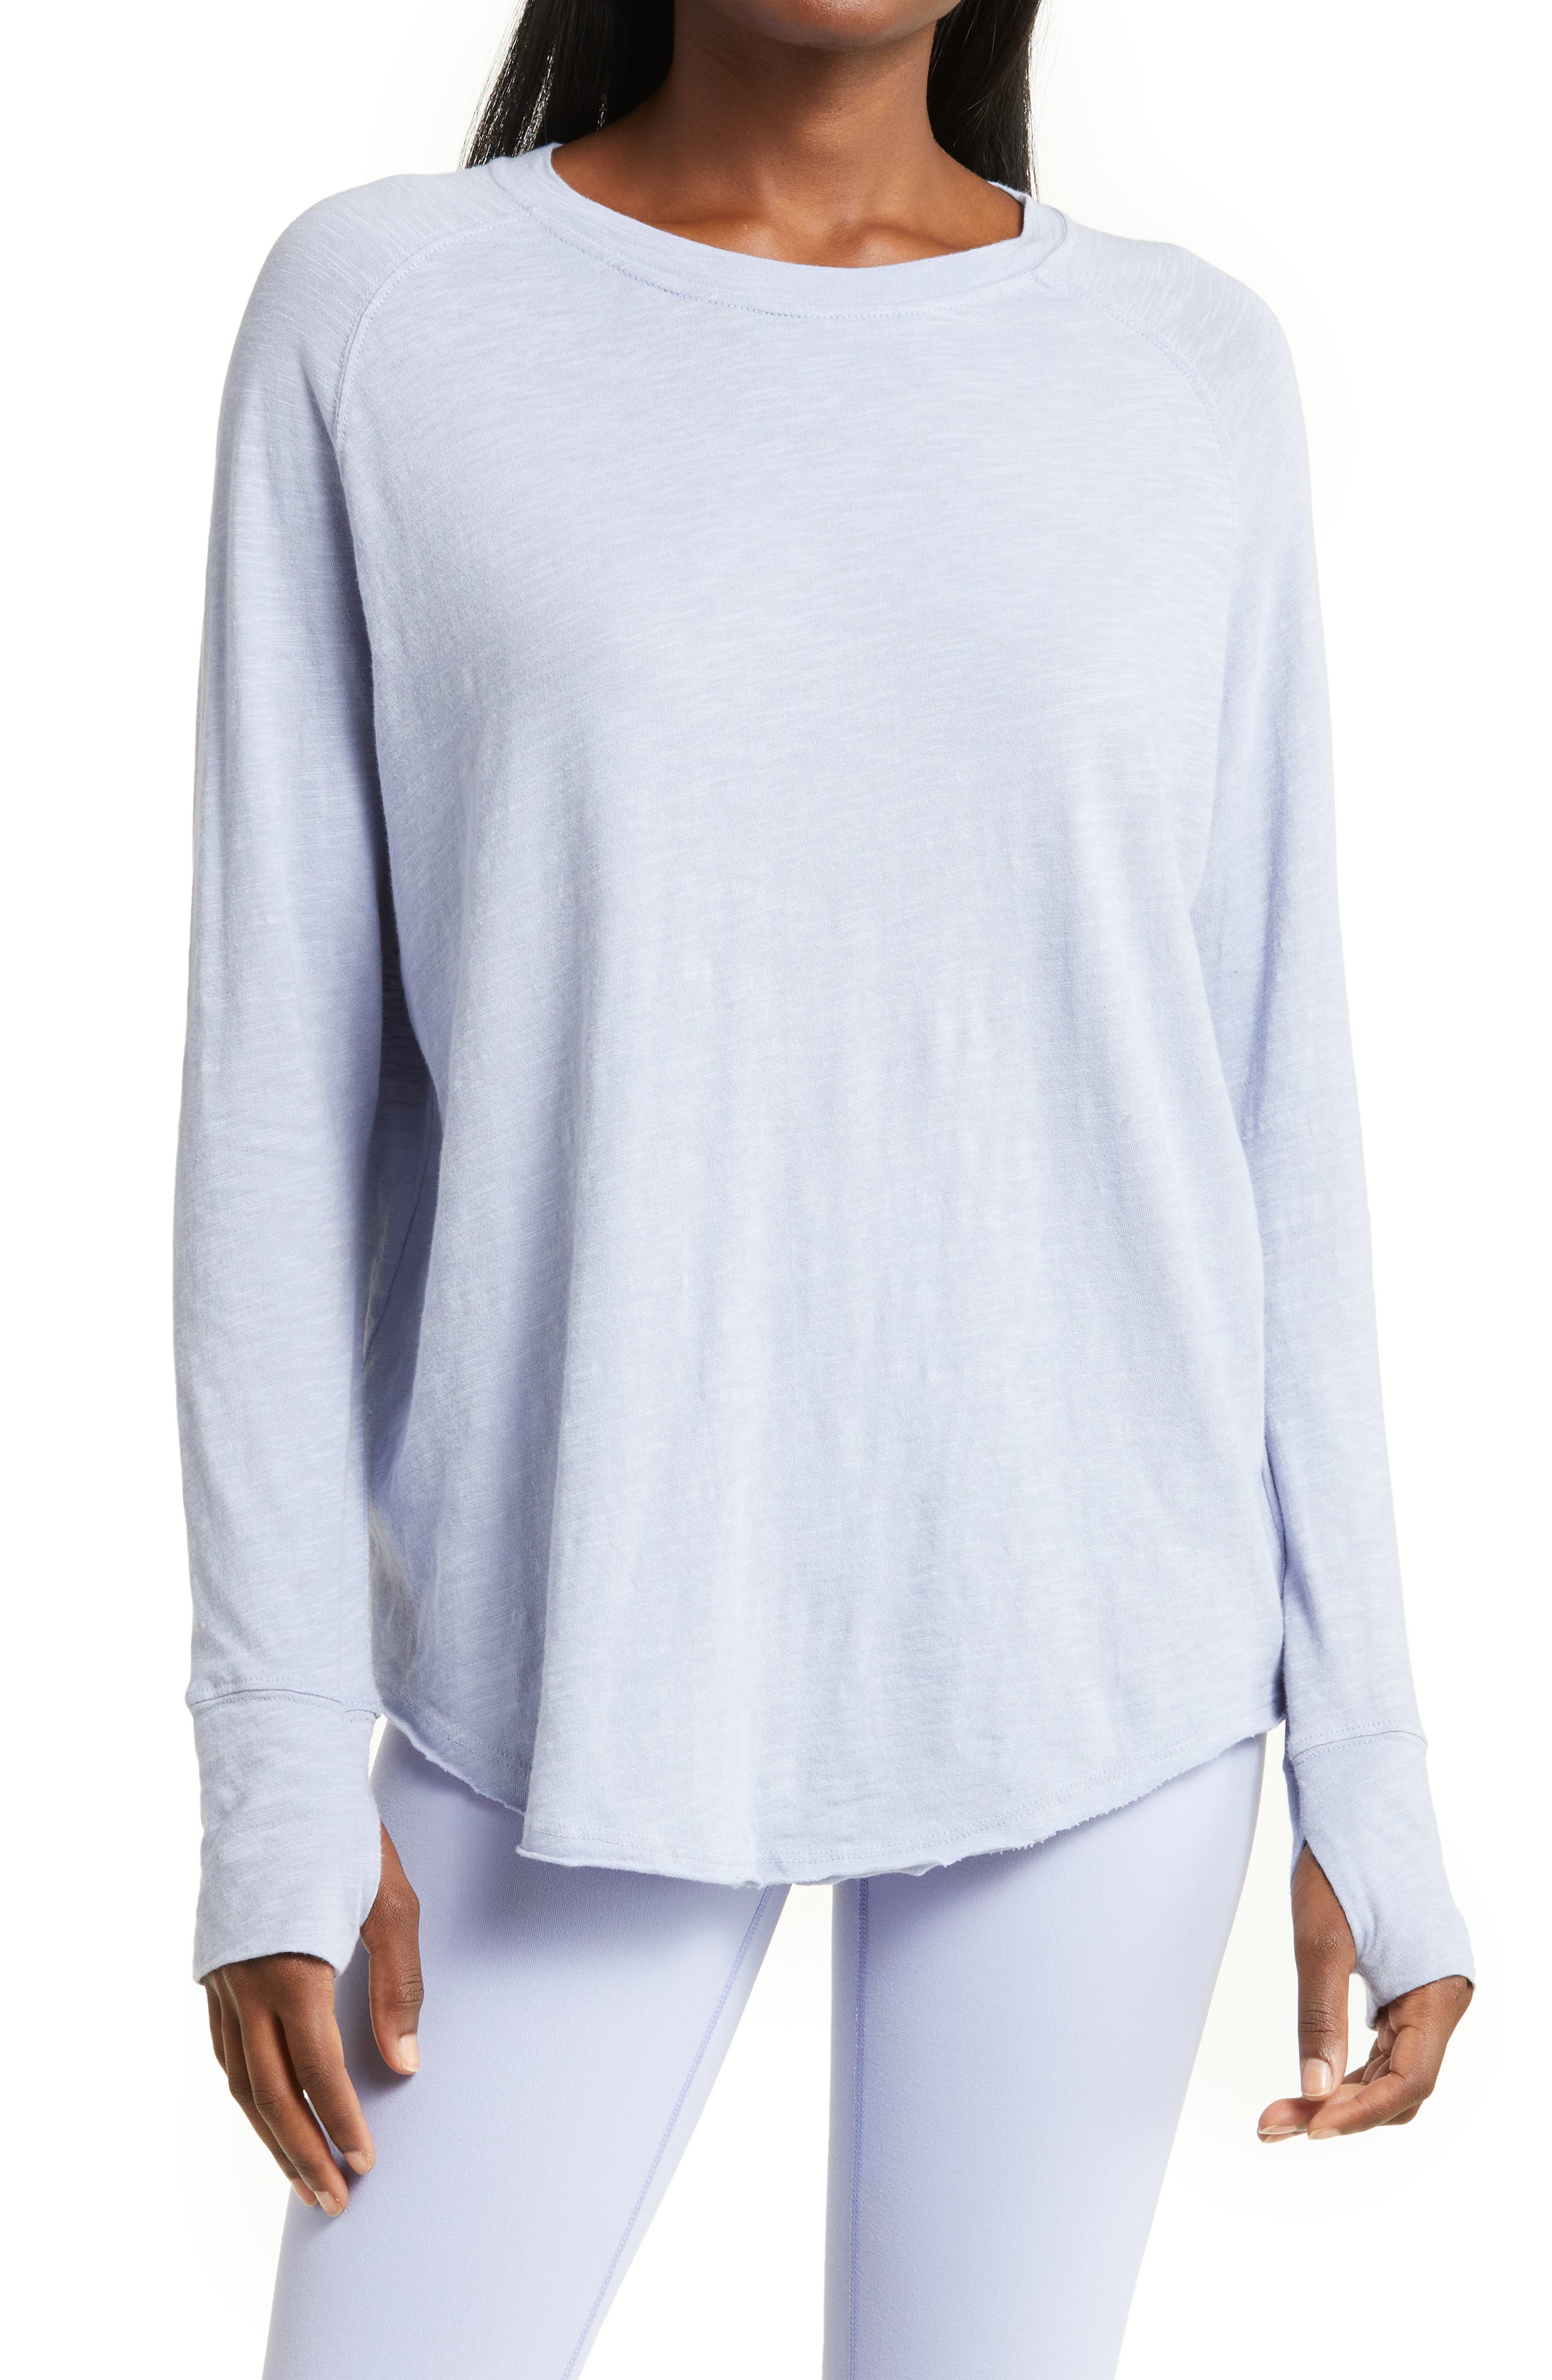 White S WOMEN FASHION Shirts & T-shirts Asymmetric Mango blouse discount 76% 